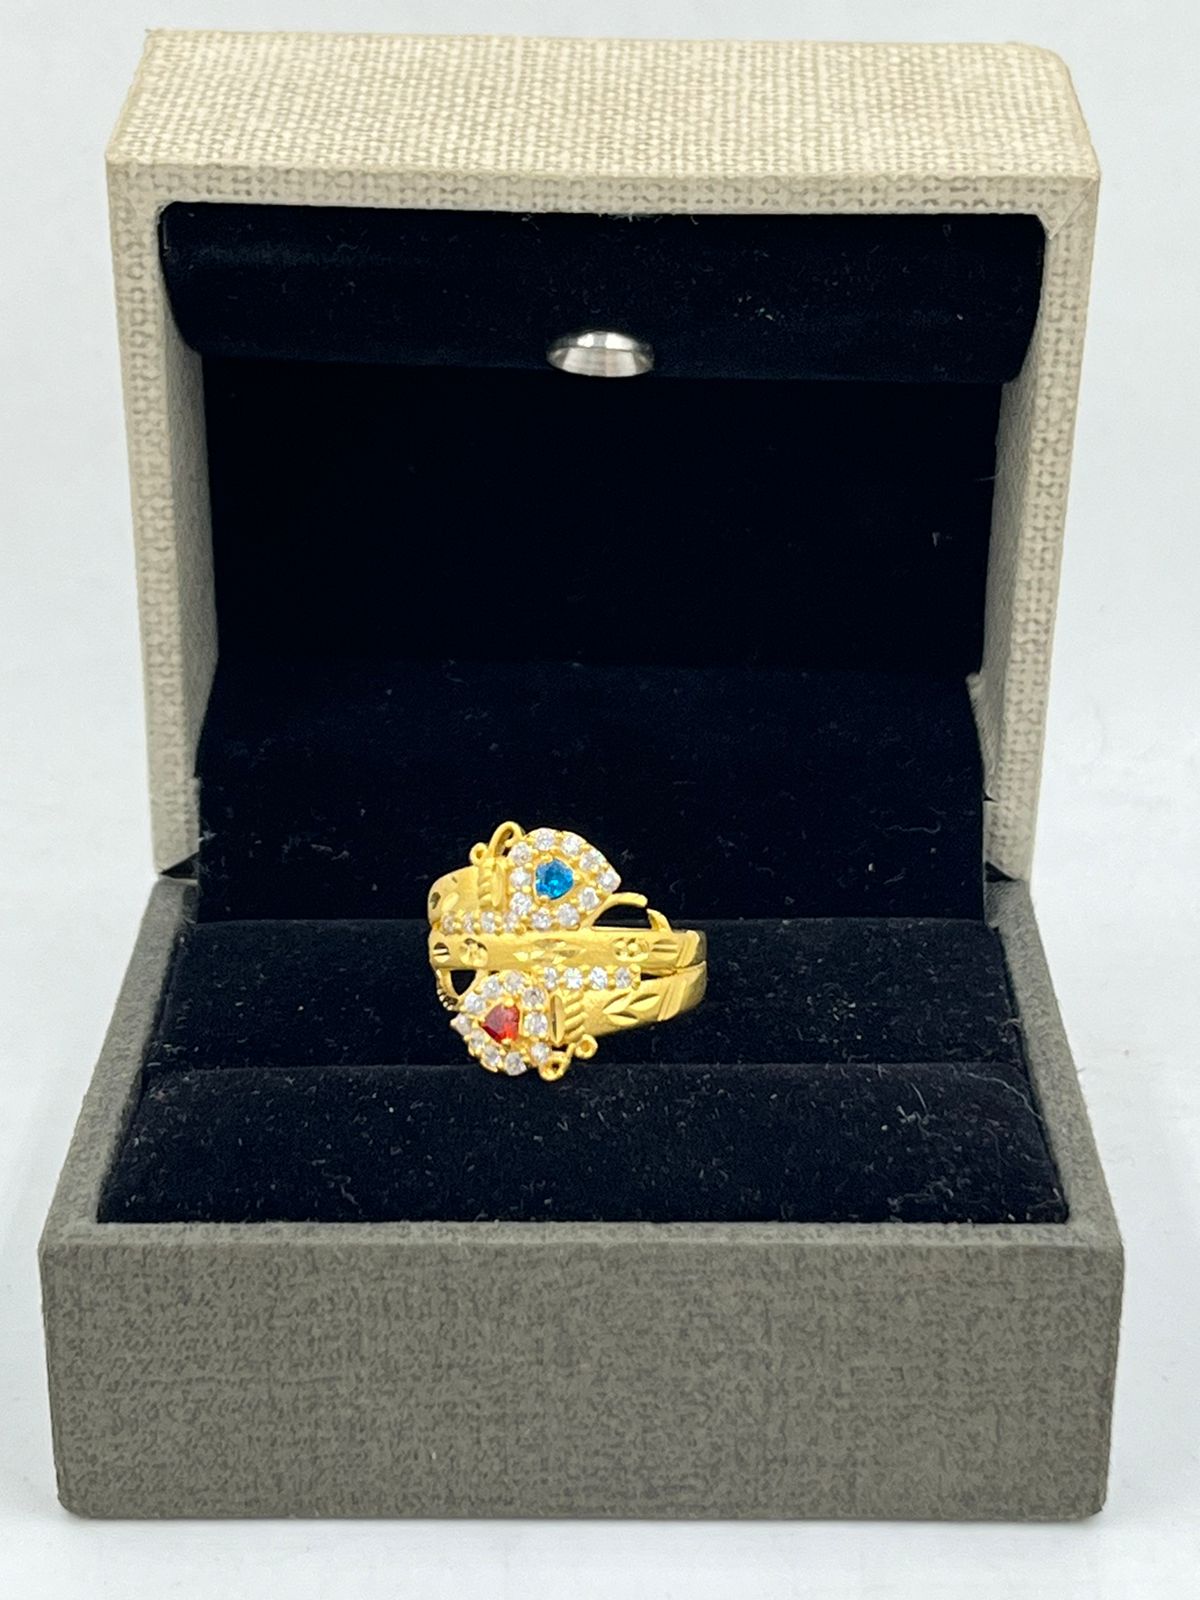 22K Gold 'Balaji' Ring For Men - 235-GR7333 in 6.650 Grams